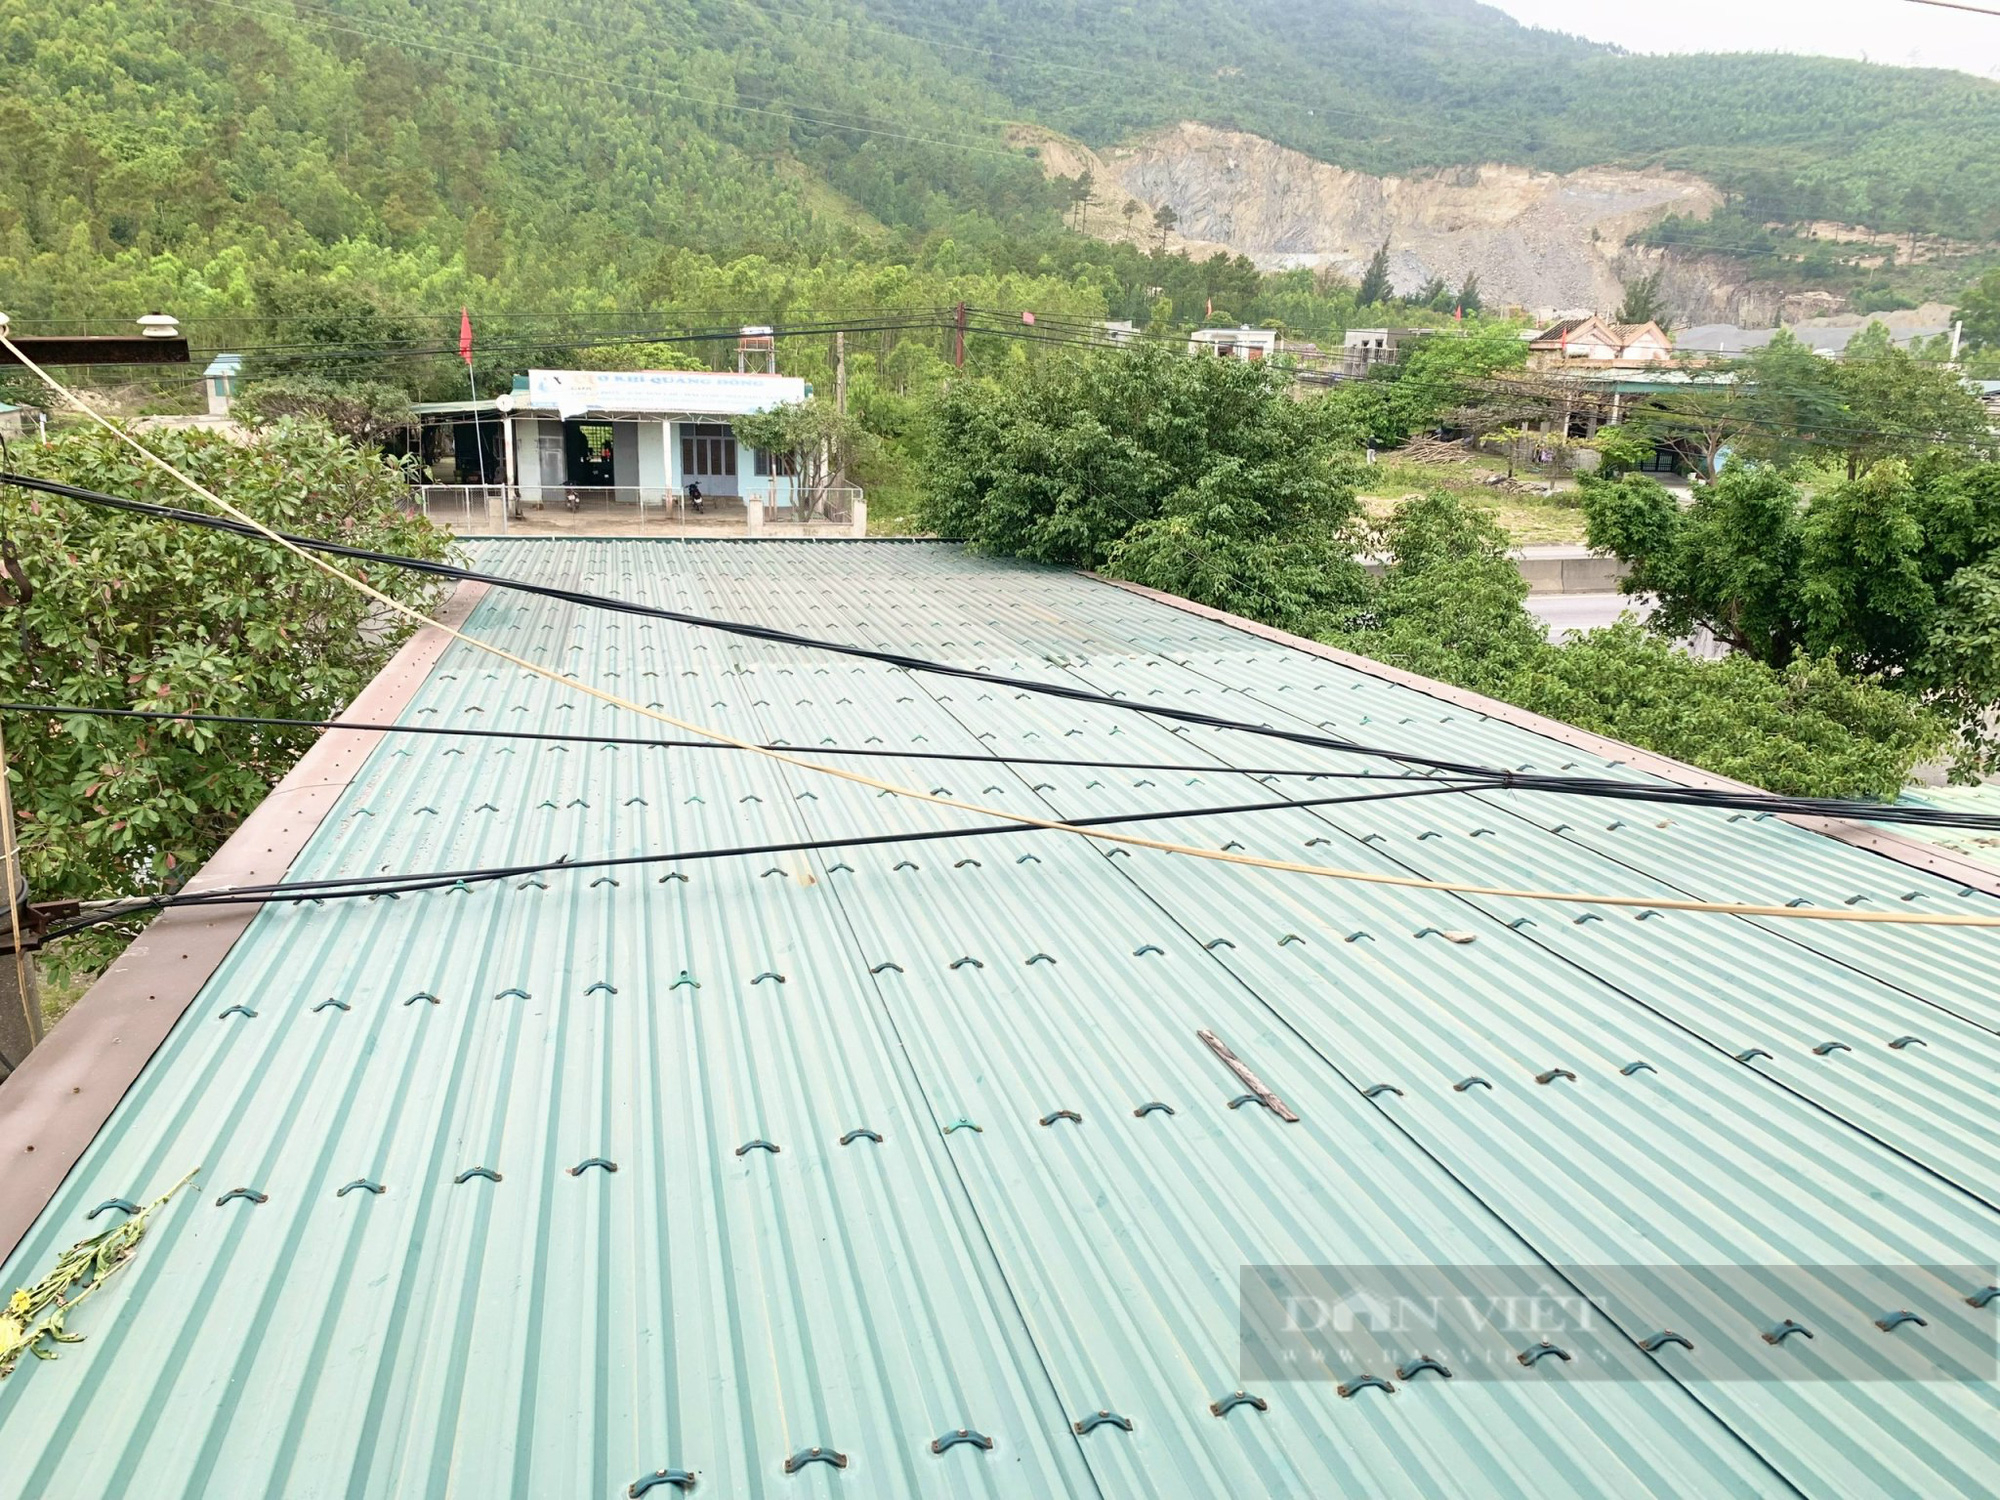 Quảng Bình: Đường dây điện áp sát mái nhà, đe doạ tính mạng người dân - Ảnh 5.